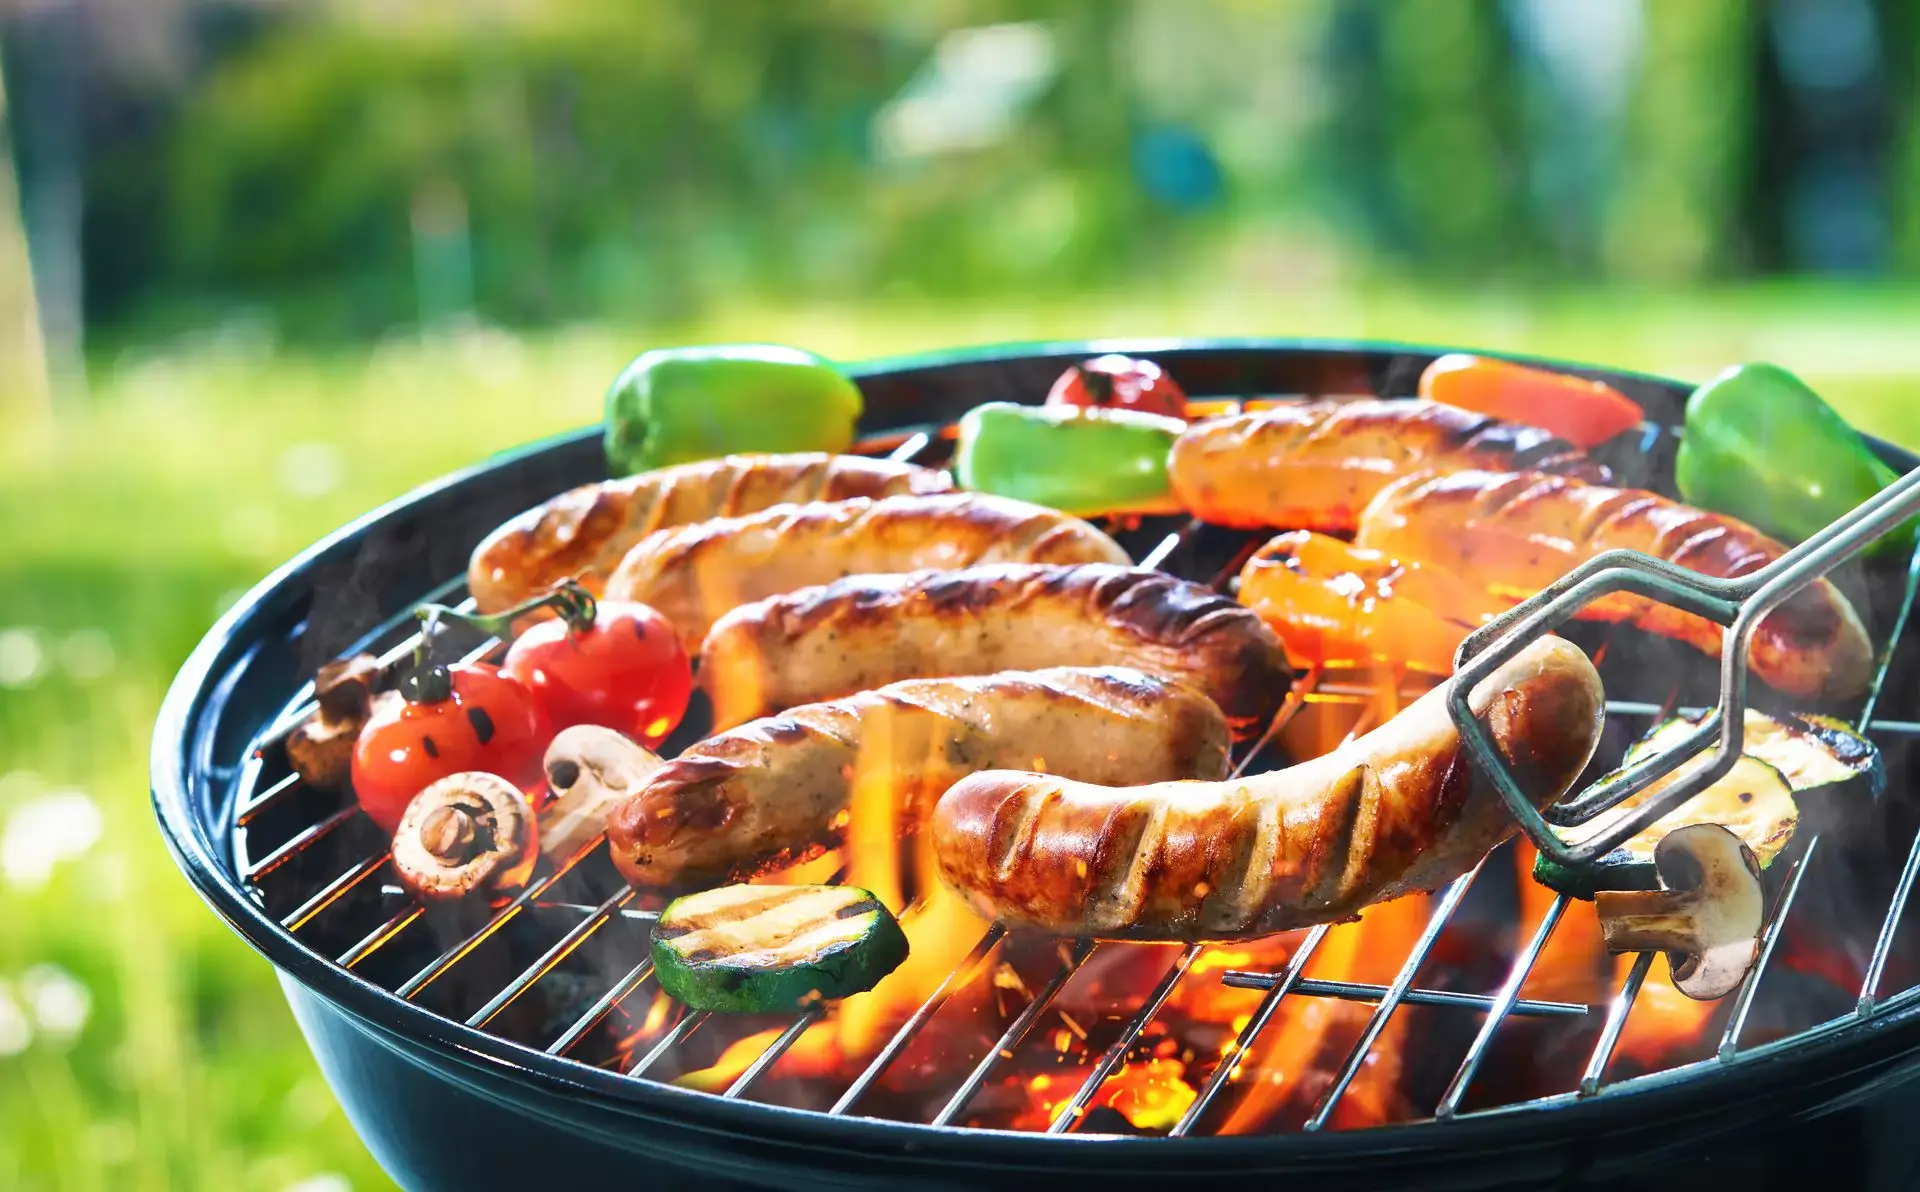 Quelle est la meilleure saucisse pour le barbecue – comment la choisir et la préparer ?